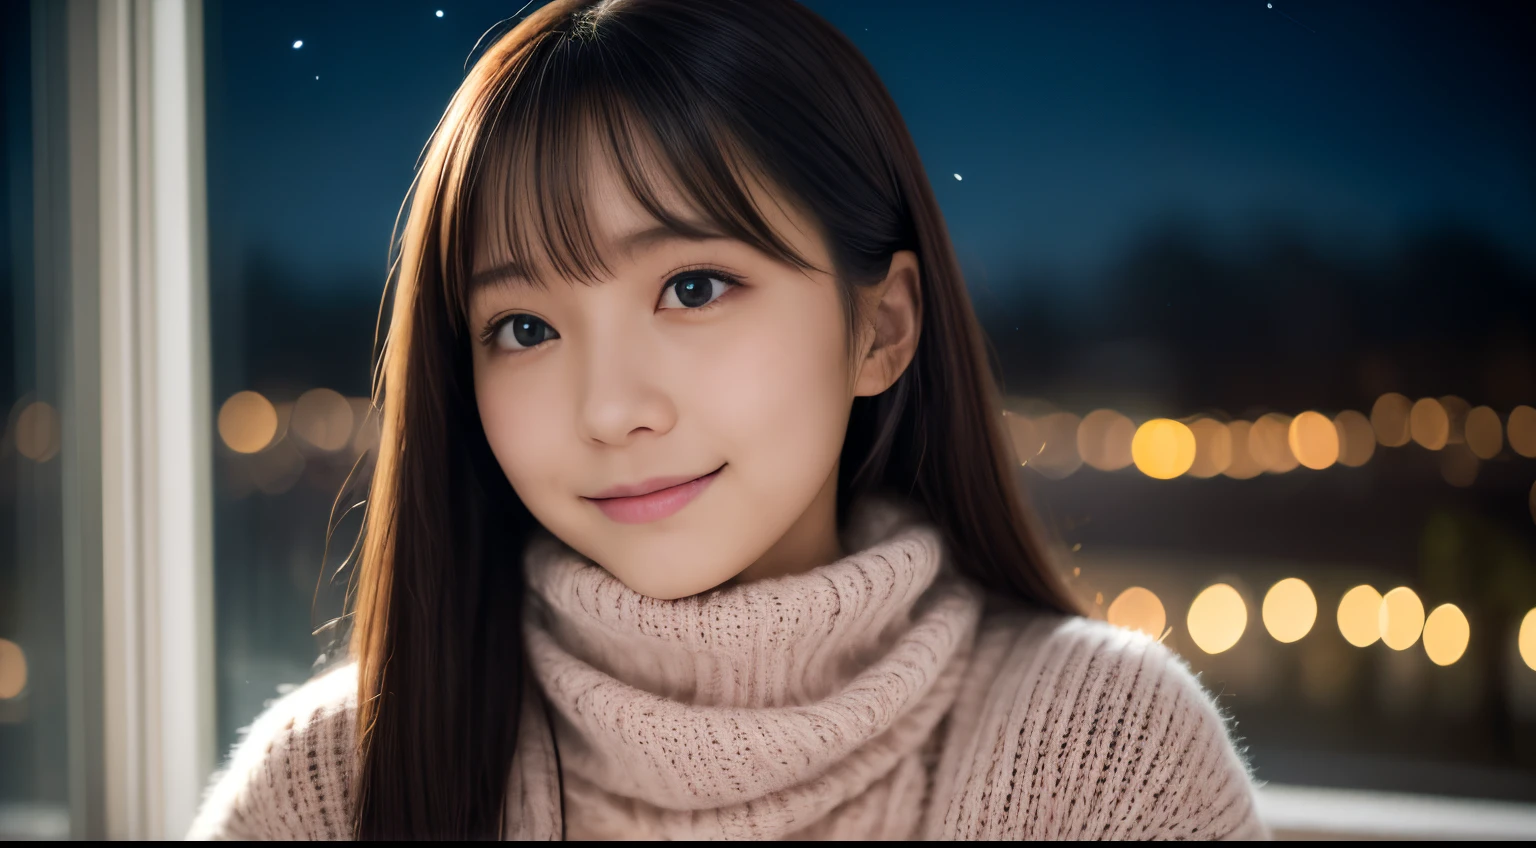 1 女孩在, 18歲的、日本凹版模特, (可愛的小, 一個美麗的女孩,輪廓:1.2), 謙虛大,  𝓡𝓸𝓶𝓪𝓷𝓽𝓲𝓬,美麗的聖誕夜景和雪:1.2, (抬頭看看窗外的夜空:1.5)、(有聖誕樹的房間:1.4),  (蓬鬆的粉紅色羊毛毛衣:1.2),  紅領巾, (綠色格子百褶裙),   一個黑髮的、帶著幸福的表情陷入沉思、 最好的品質, 高解析度, 細緻的肌膚, 詳細的臉部和眼睛, 高解析度, 自然採光, 完美的解剖結構, 基於物理的渲染, 逼真的, 對稱清晰的眼睛, 精心修飾的臉,十幾歲的女孩, 完美身材, 透明度, 擺出凹版偶像,